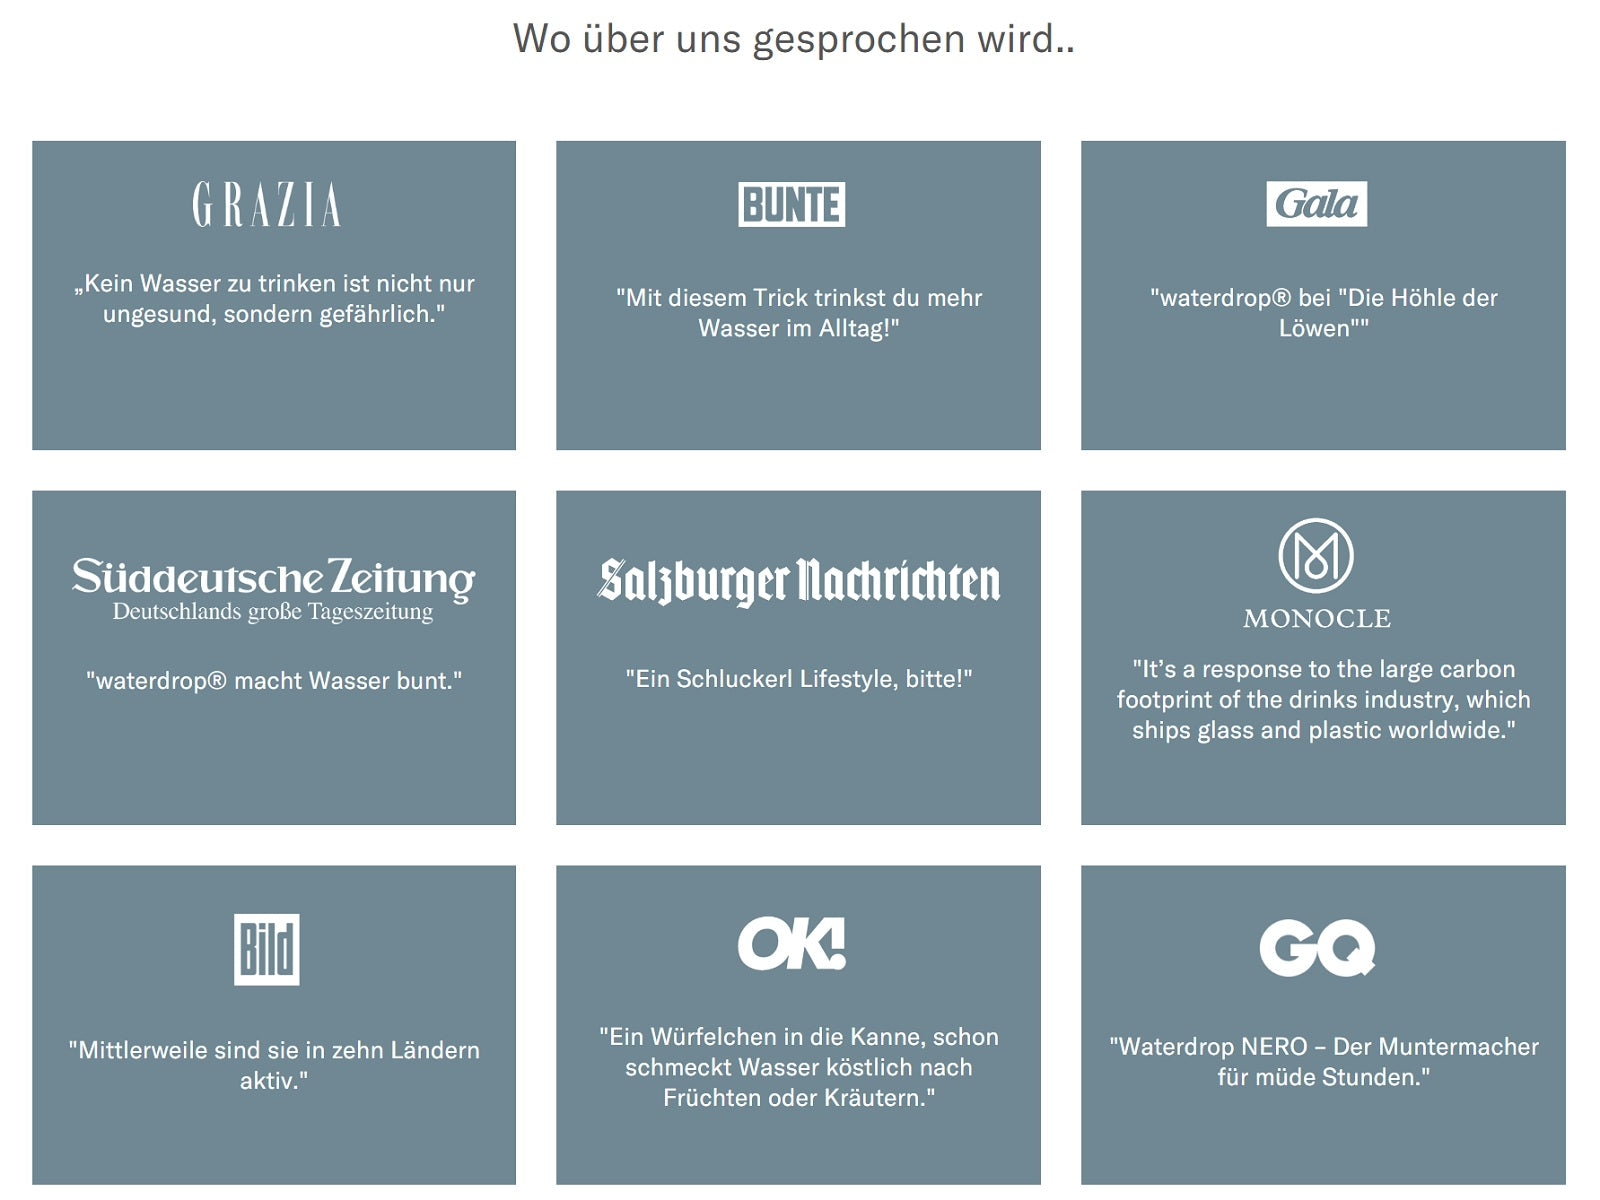 Der Screenshot zeigt die Erwähnungen von der Marke waterdrop in der Presse, darunter die Süddeutsche Zeitung, Gala, GQ und die Bild.